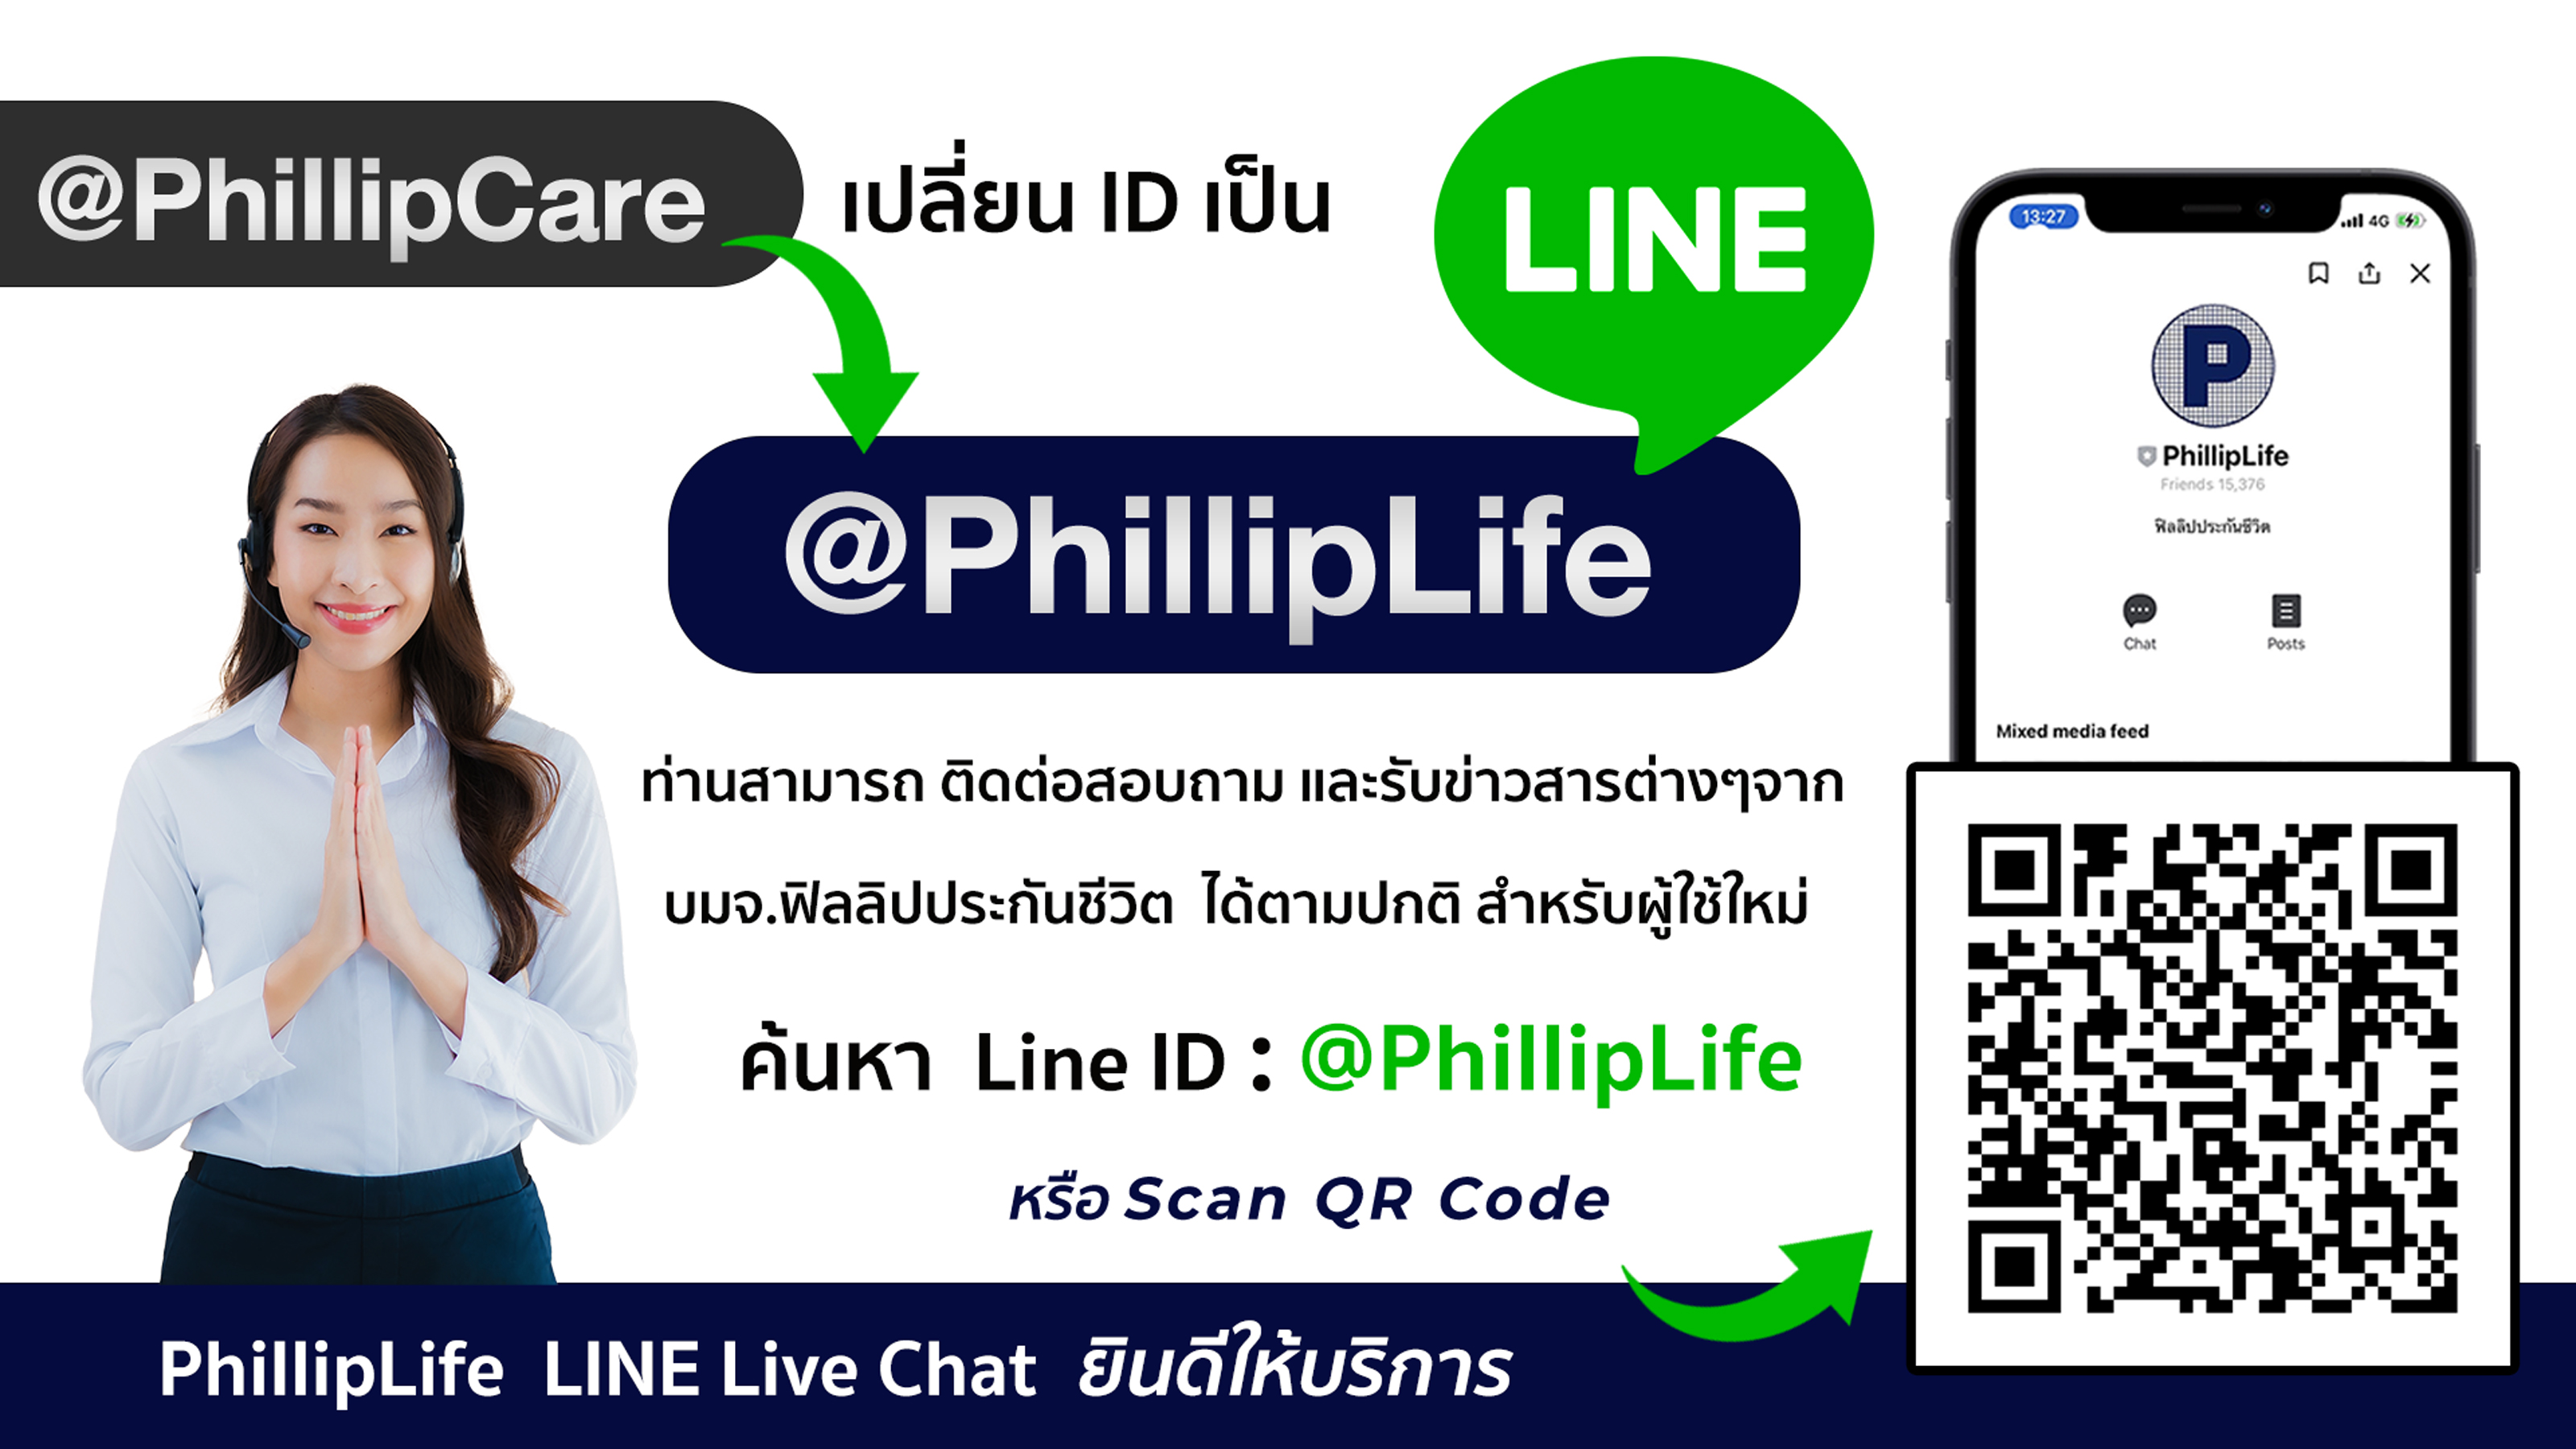 ฟิลลิปประกันชีวิต เปลี่ยนชื่อ LINE Official Account จาก @PhillipCare เป็น @PhillipLife  ย้ำยังคงใช้บริการได้เหมือนเดิม